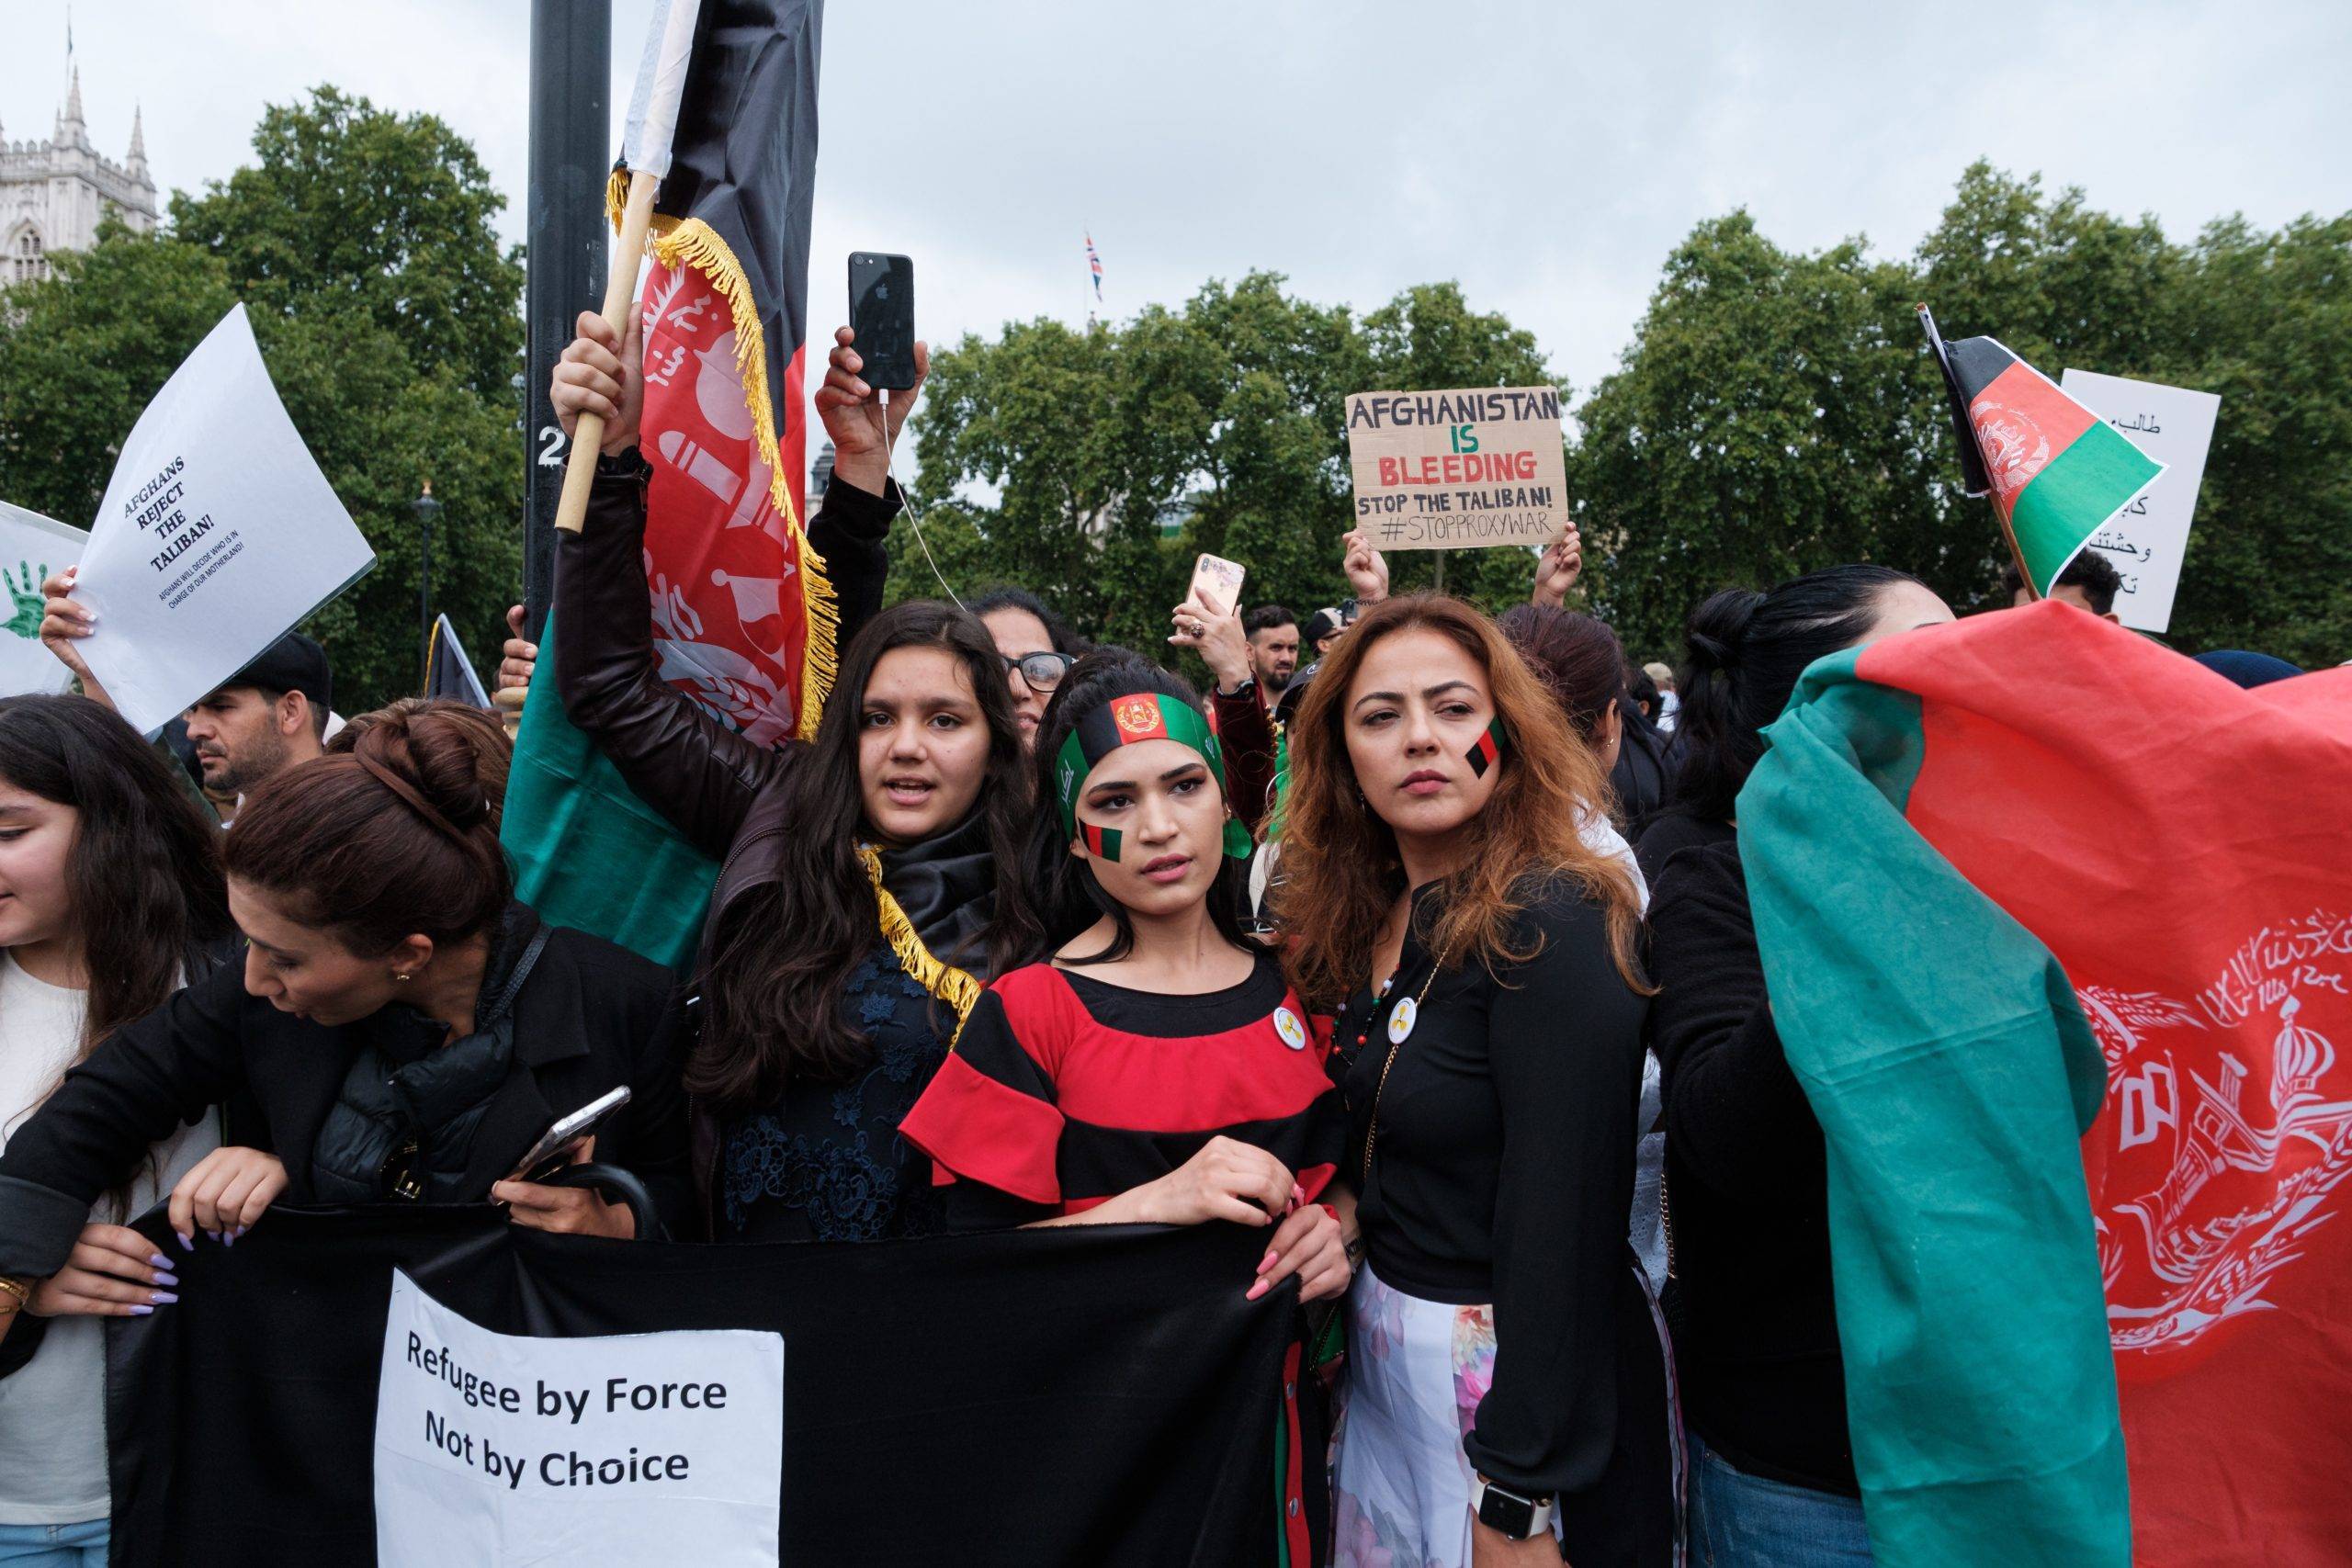 Manifestations contre les talibans à Londres, août 2021 (c) Unsplash